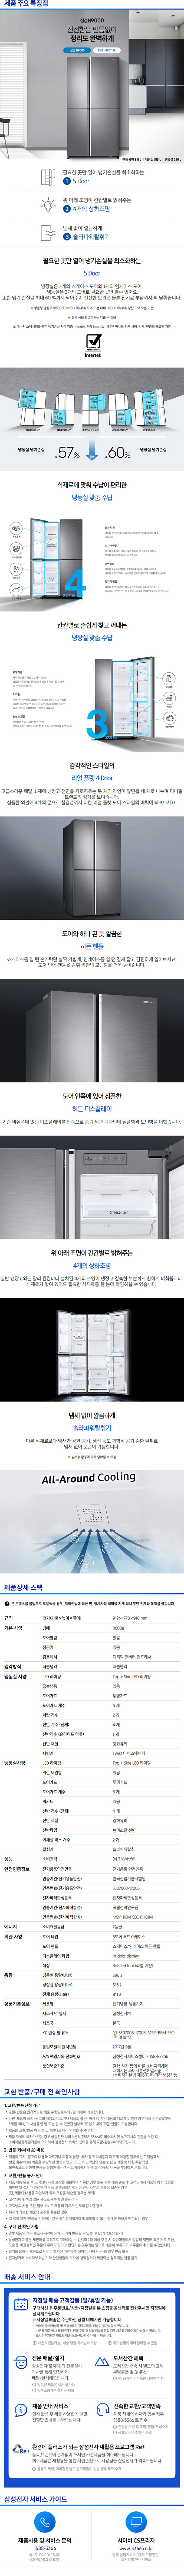 딜라이브 - 삼성 지펠 양문냉장고 (RH81M8011S9) 상세보기